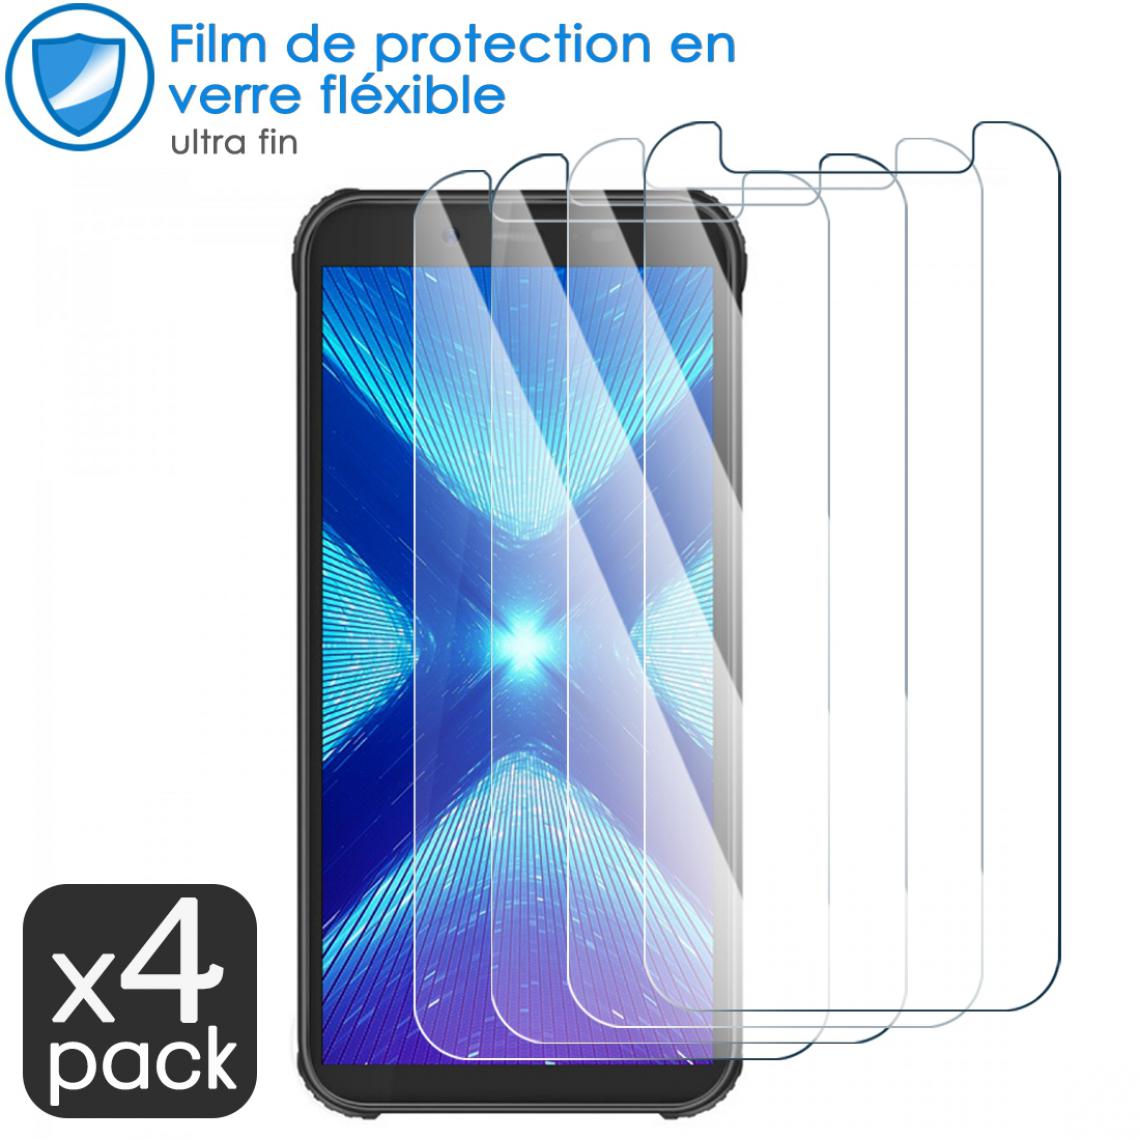 Karylax - Film de Protection d'écran en Verre Fléxible Dureté 9H pour Blackview Bv4900 Pro (Pack x4) - Protection écran smartphone